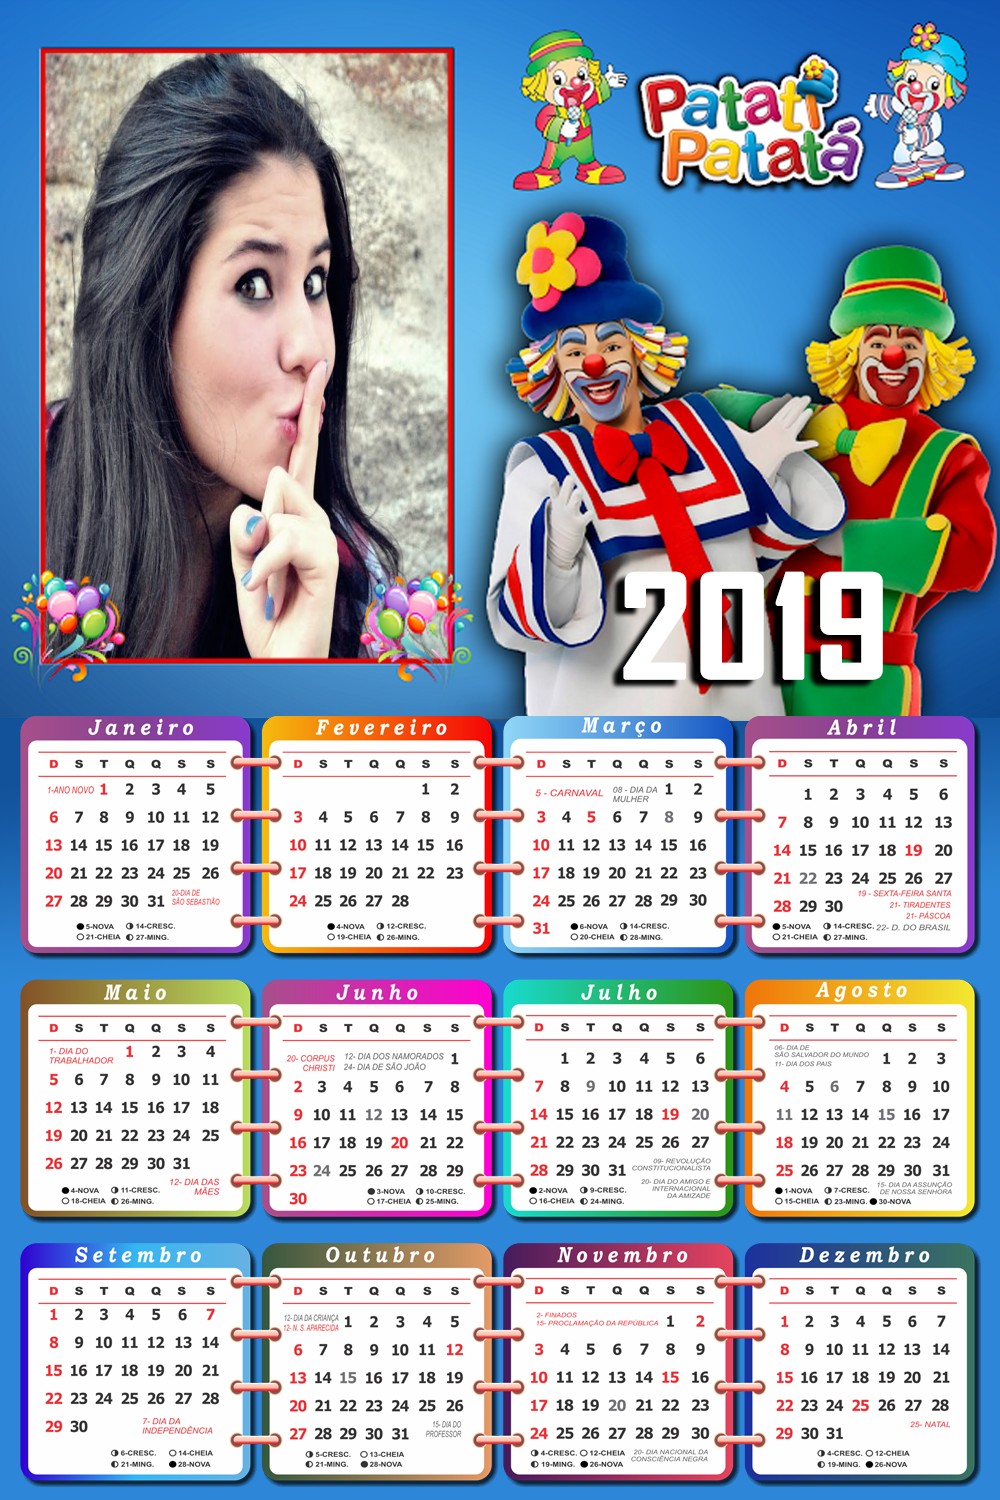 montagem-de-fotos-online-com-calendario-2019-patati-patata